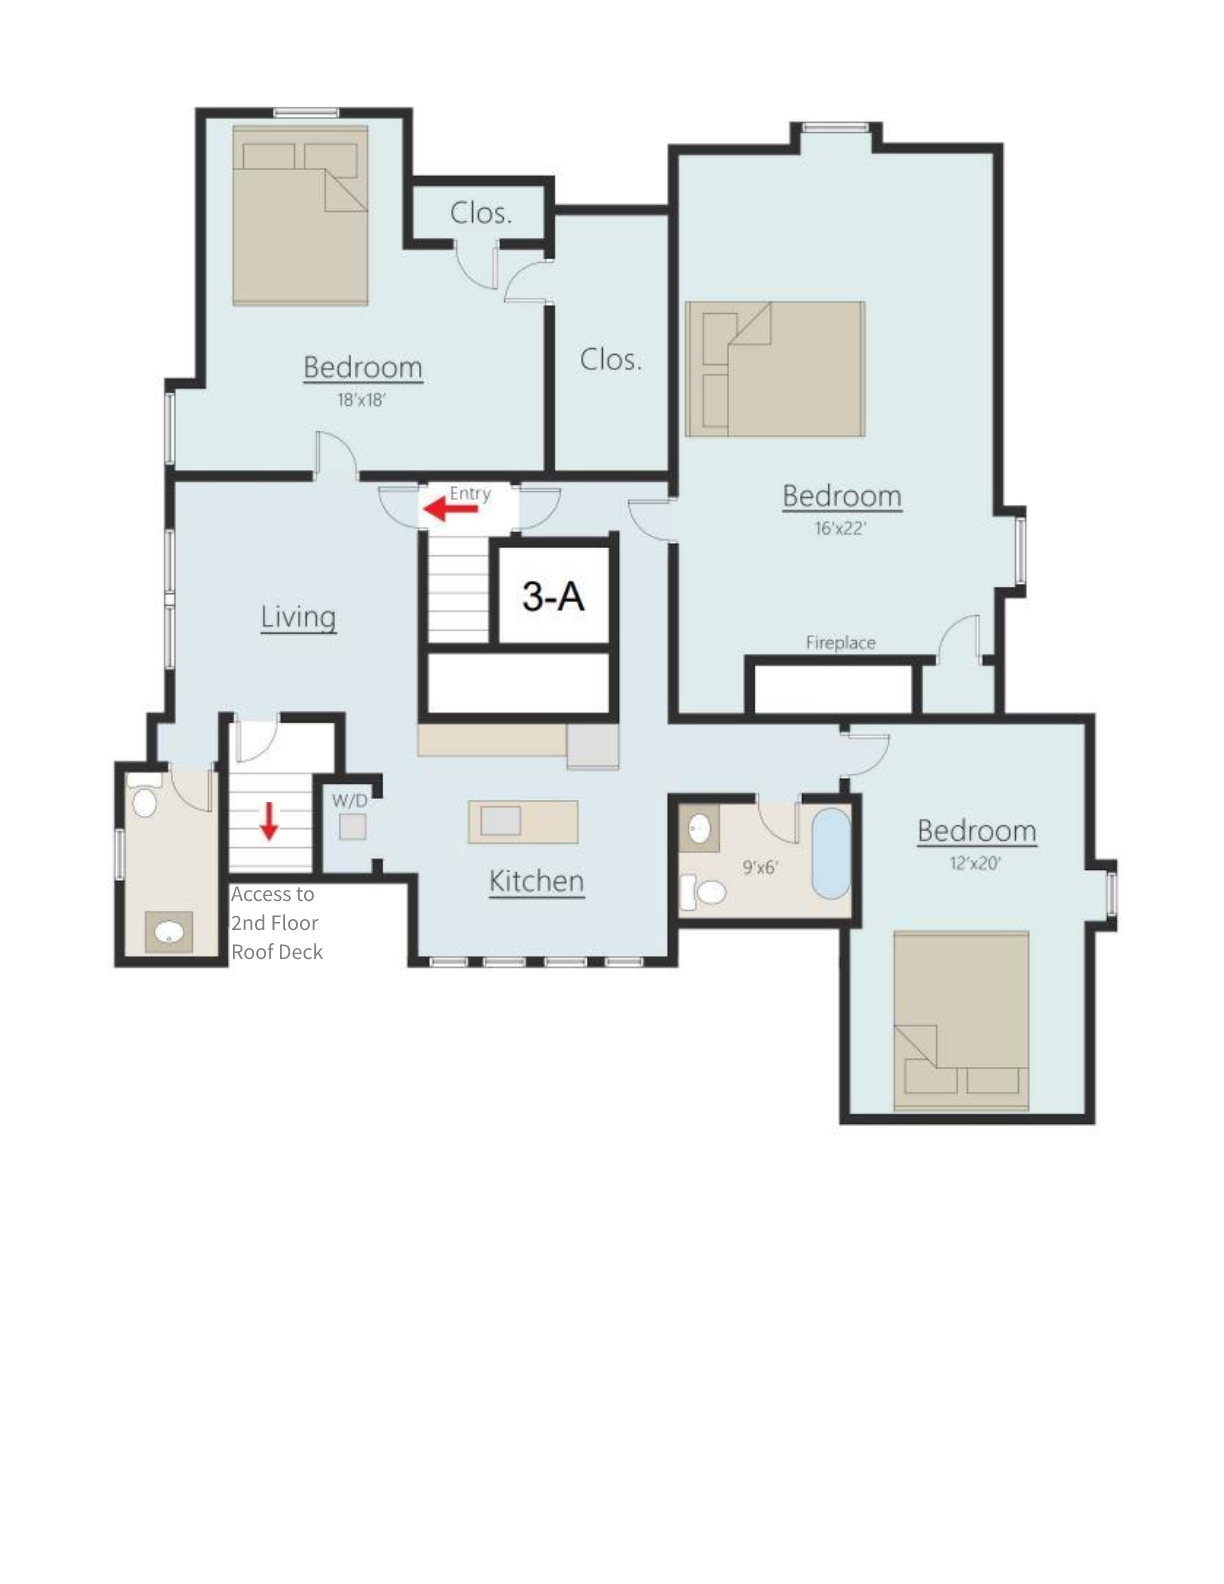 3 bedroom apartment floorplan - carlisle house